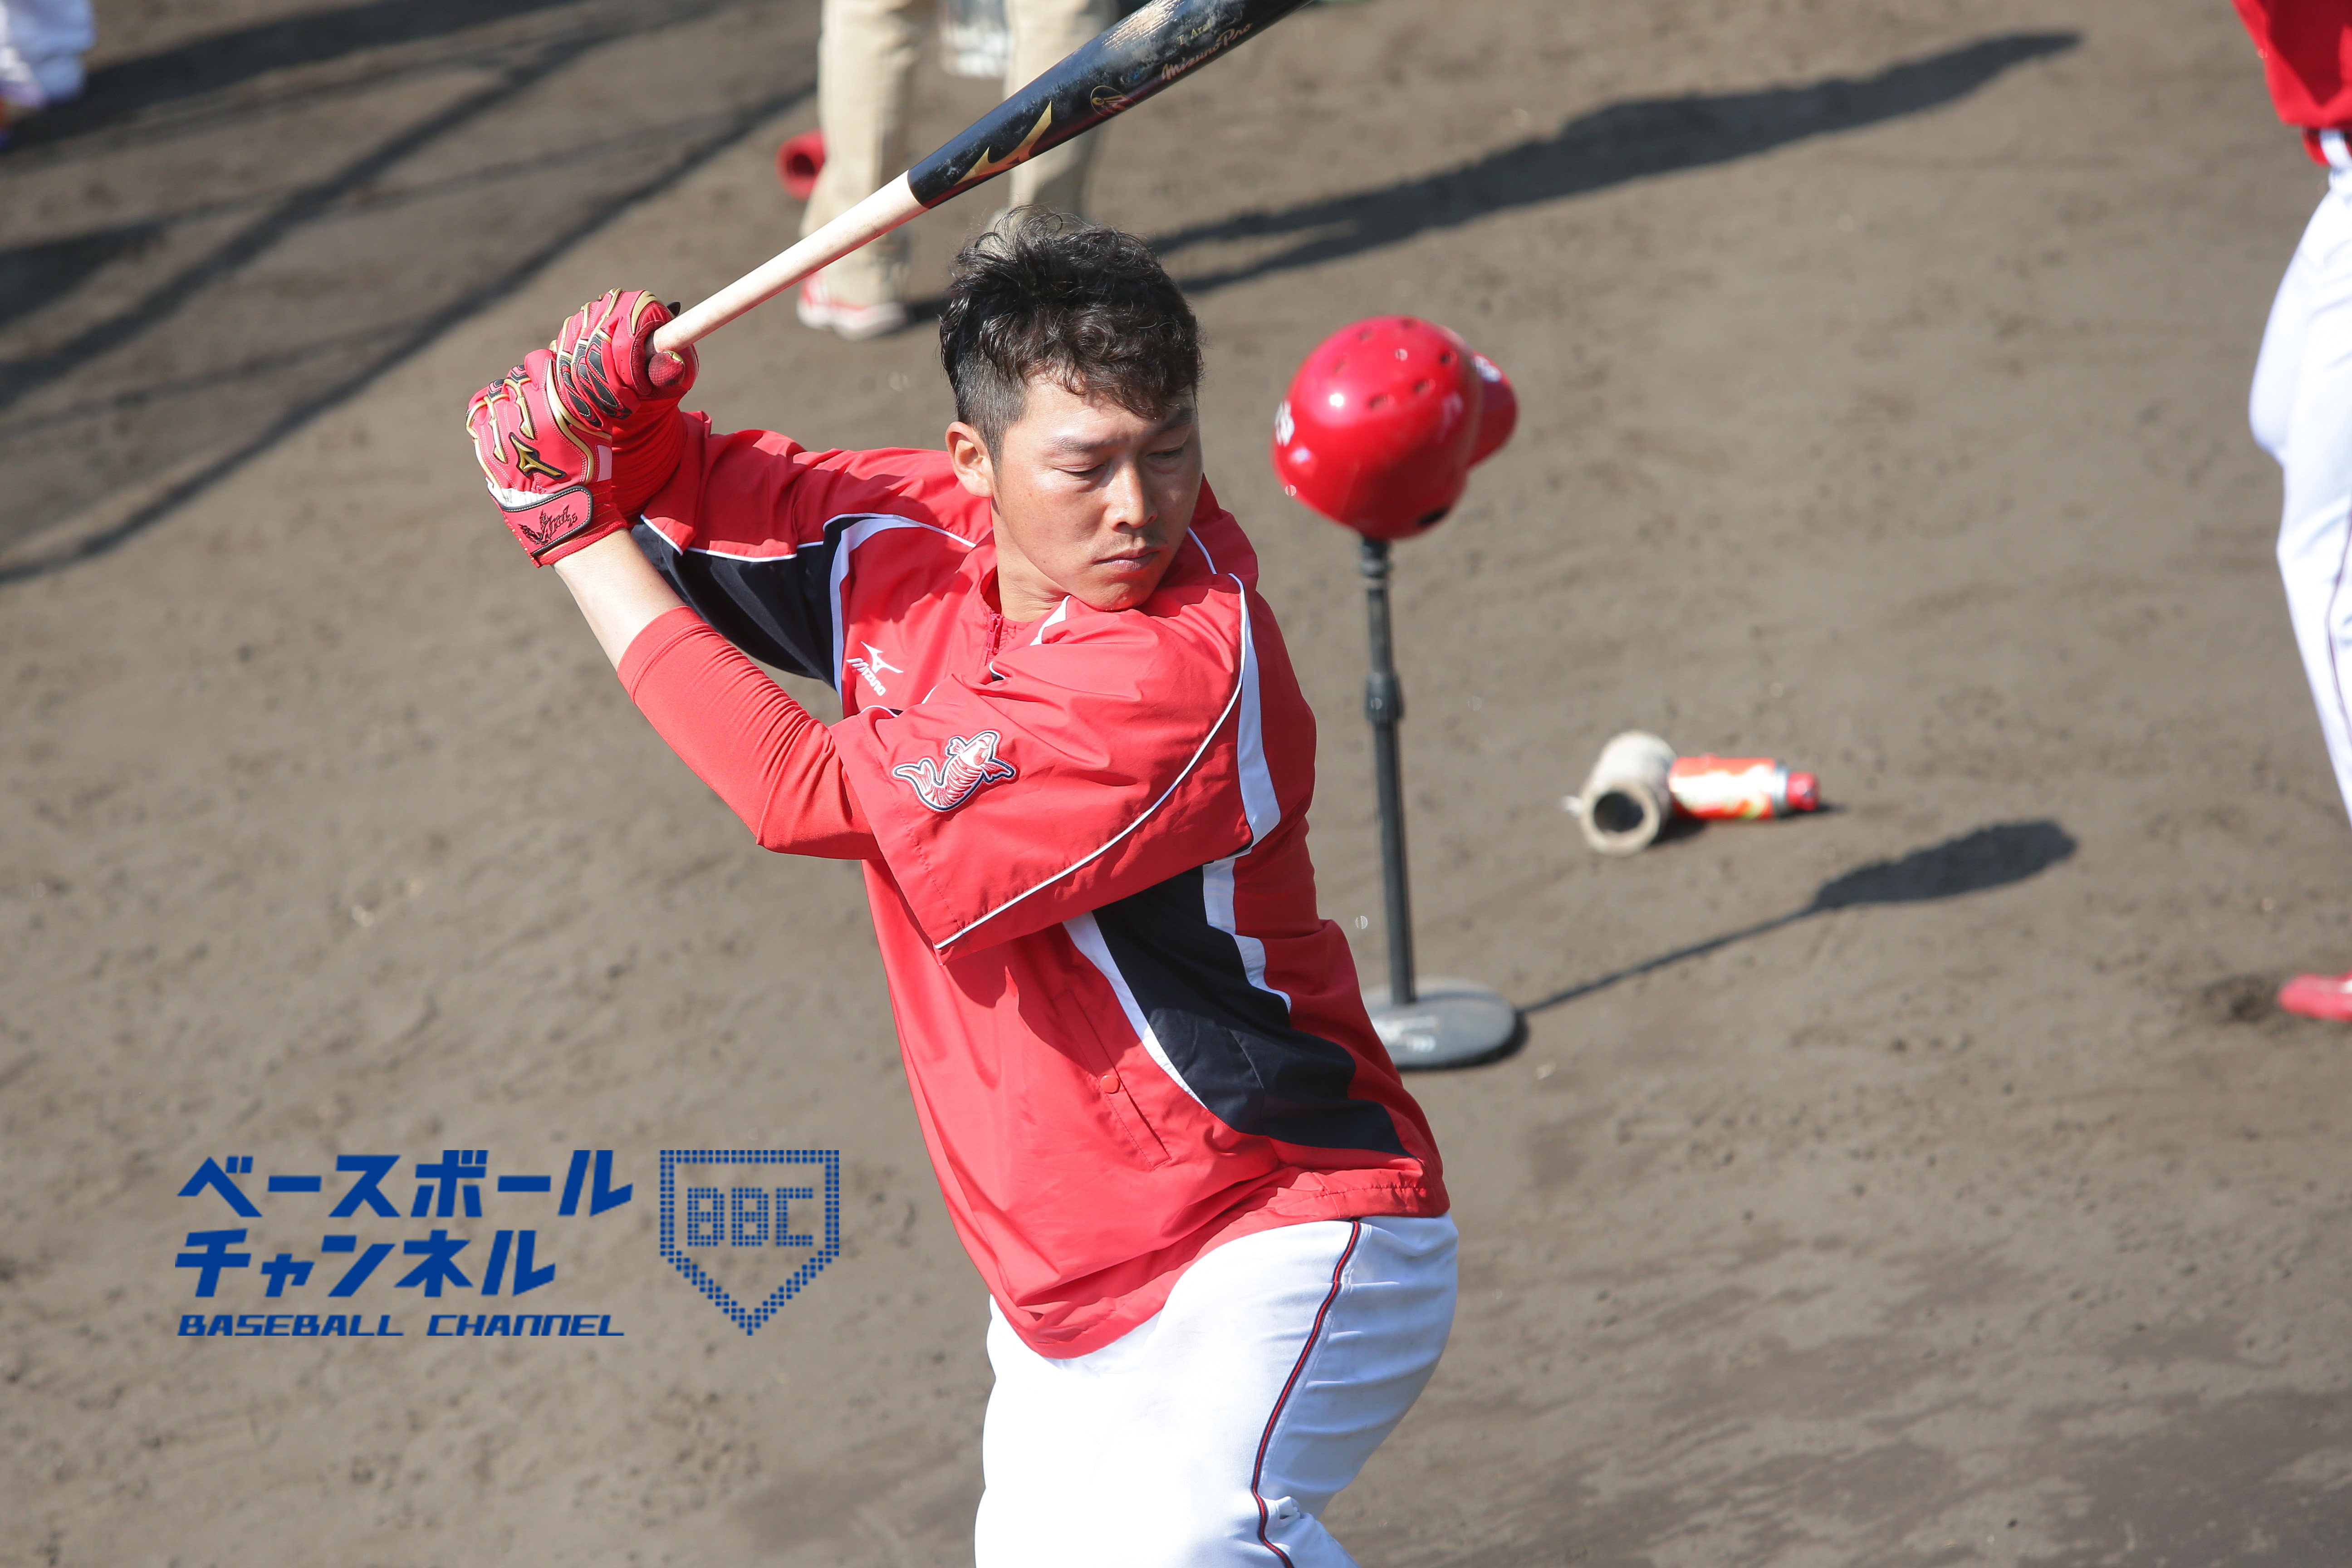 古巣 広島で息を吹き返した新井貴浩 一時は記録達成危ぶまれるも 山あり谷ありの00安打 ベースボールチャンネル Baseball Channel